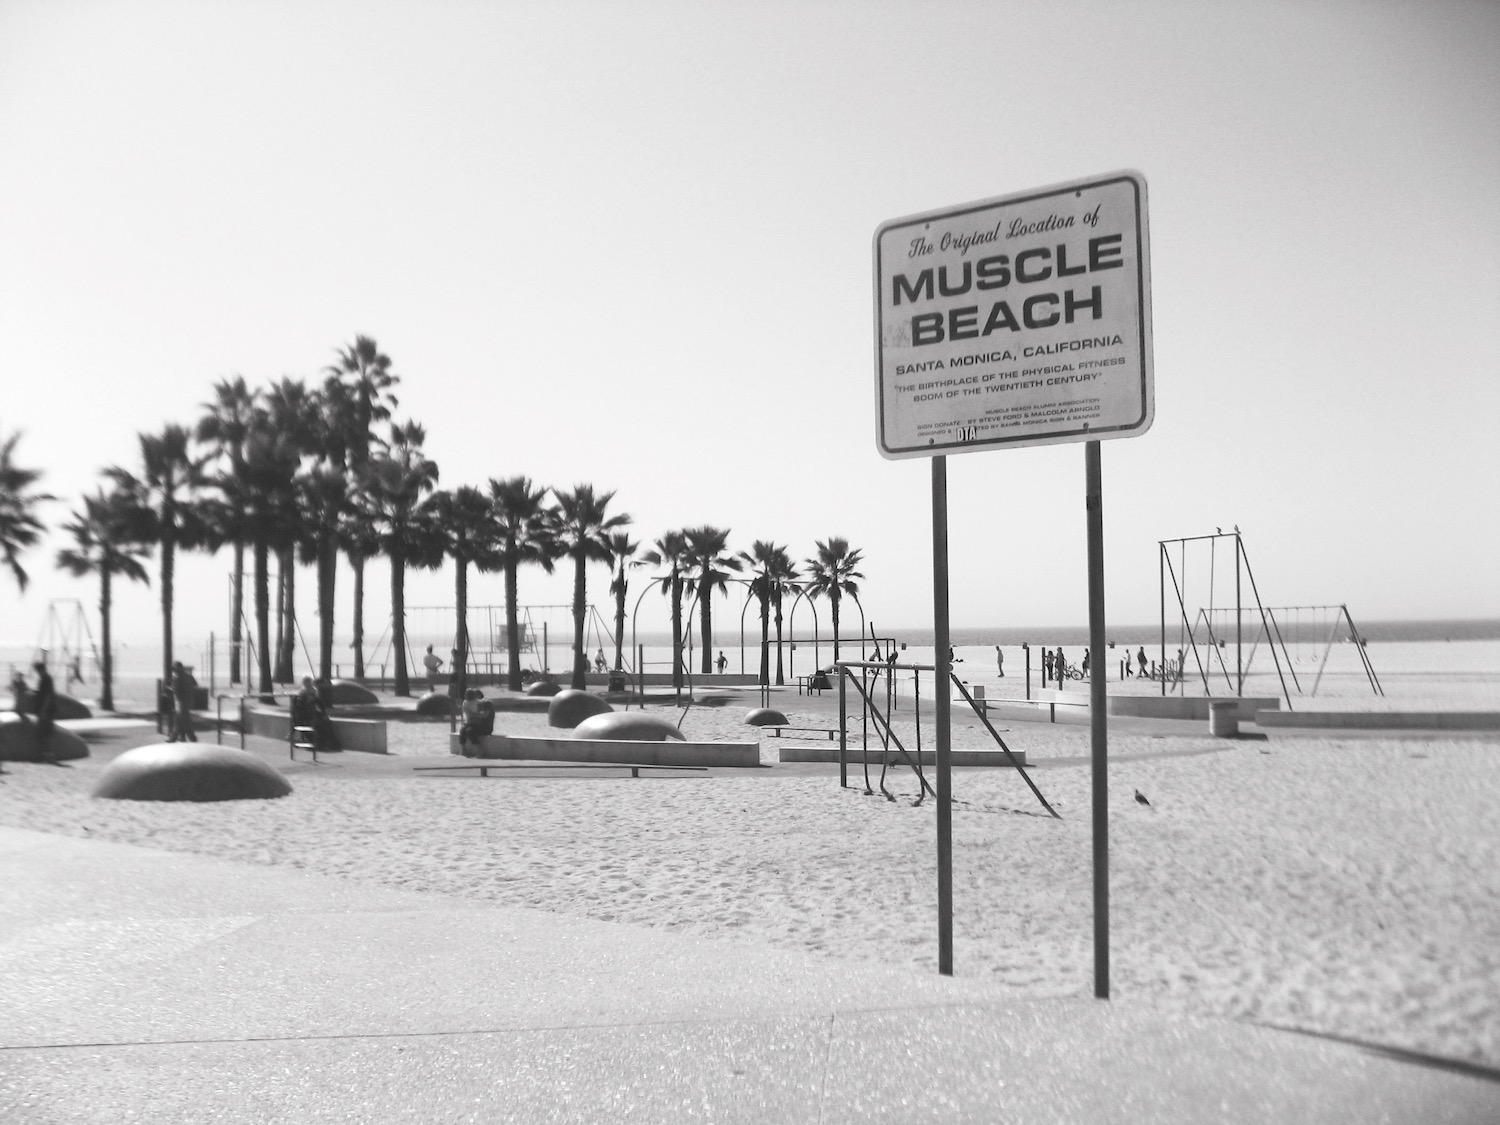 Muscle Beach, Santa Monica